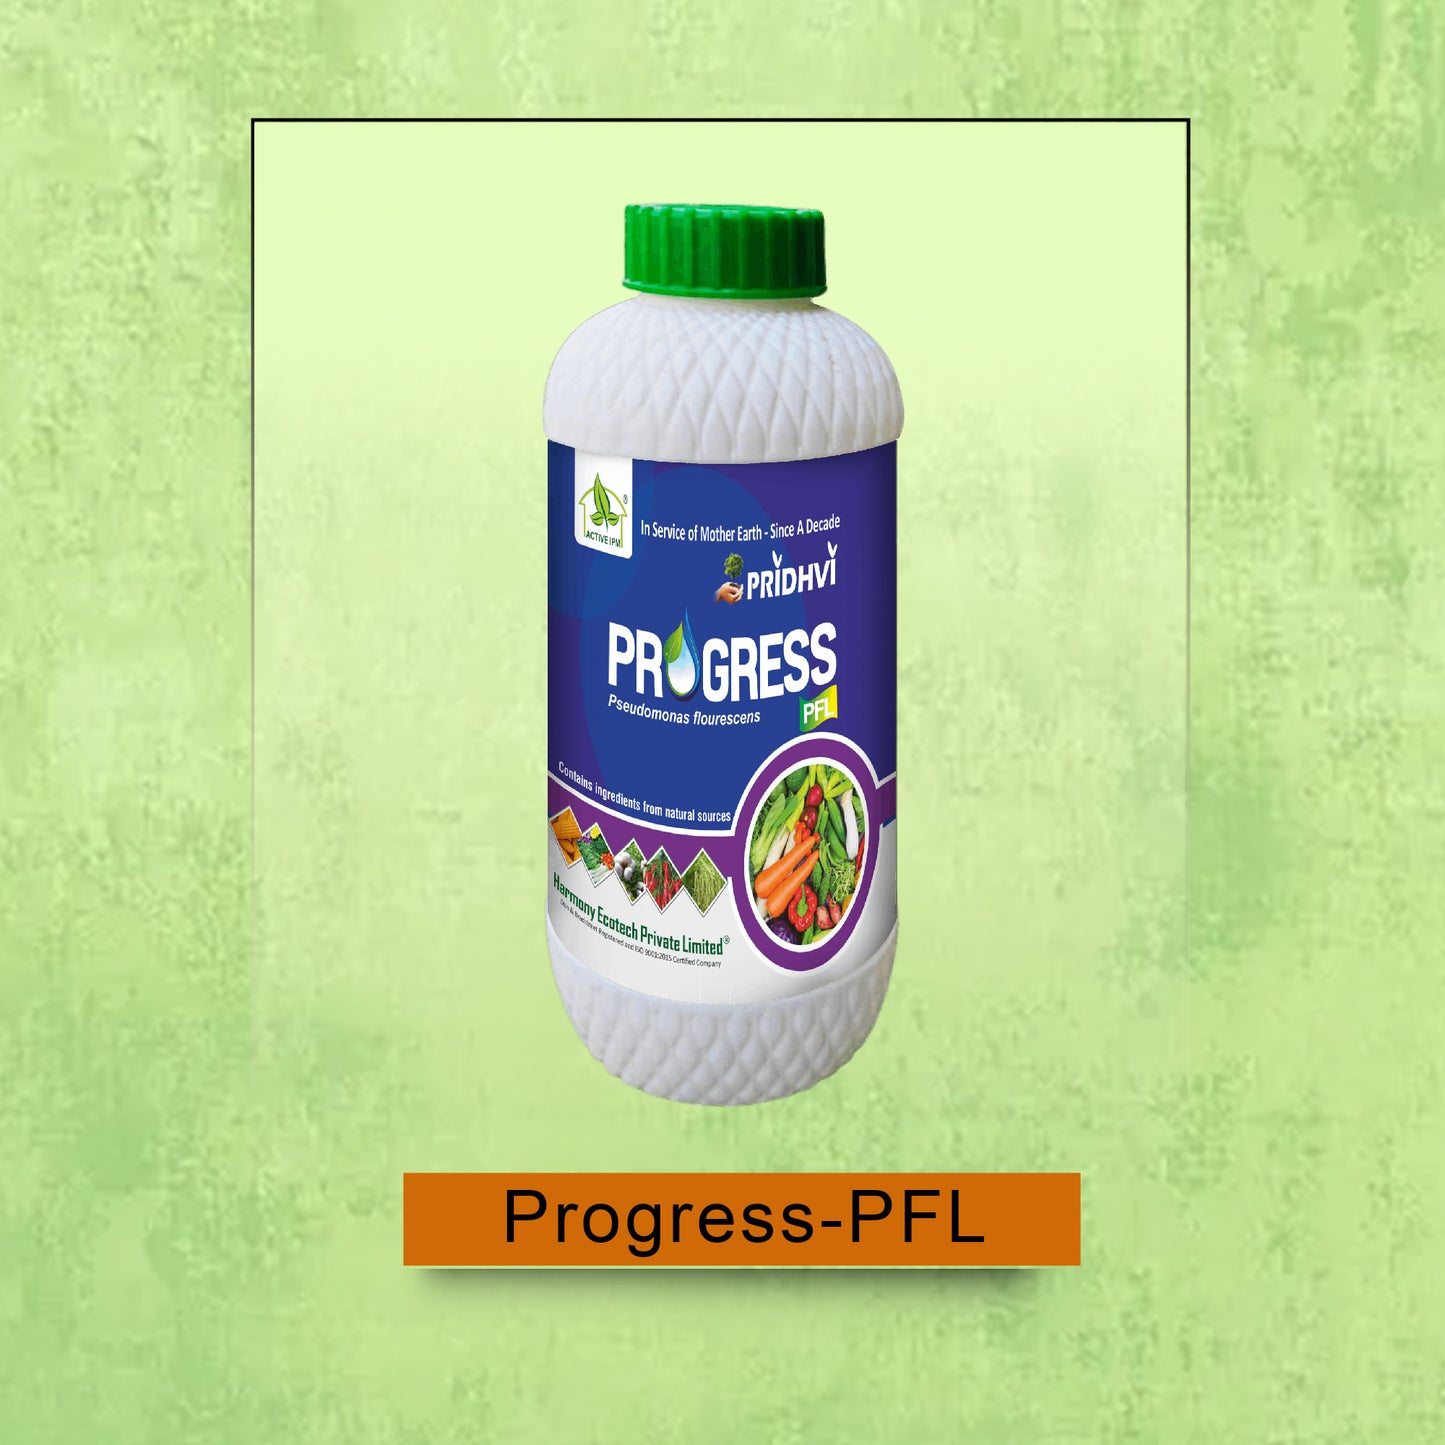 Progress-PFL